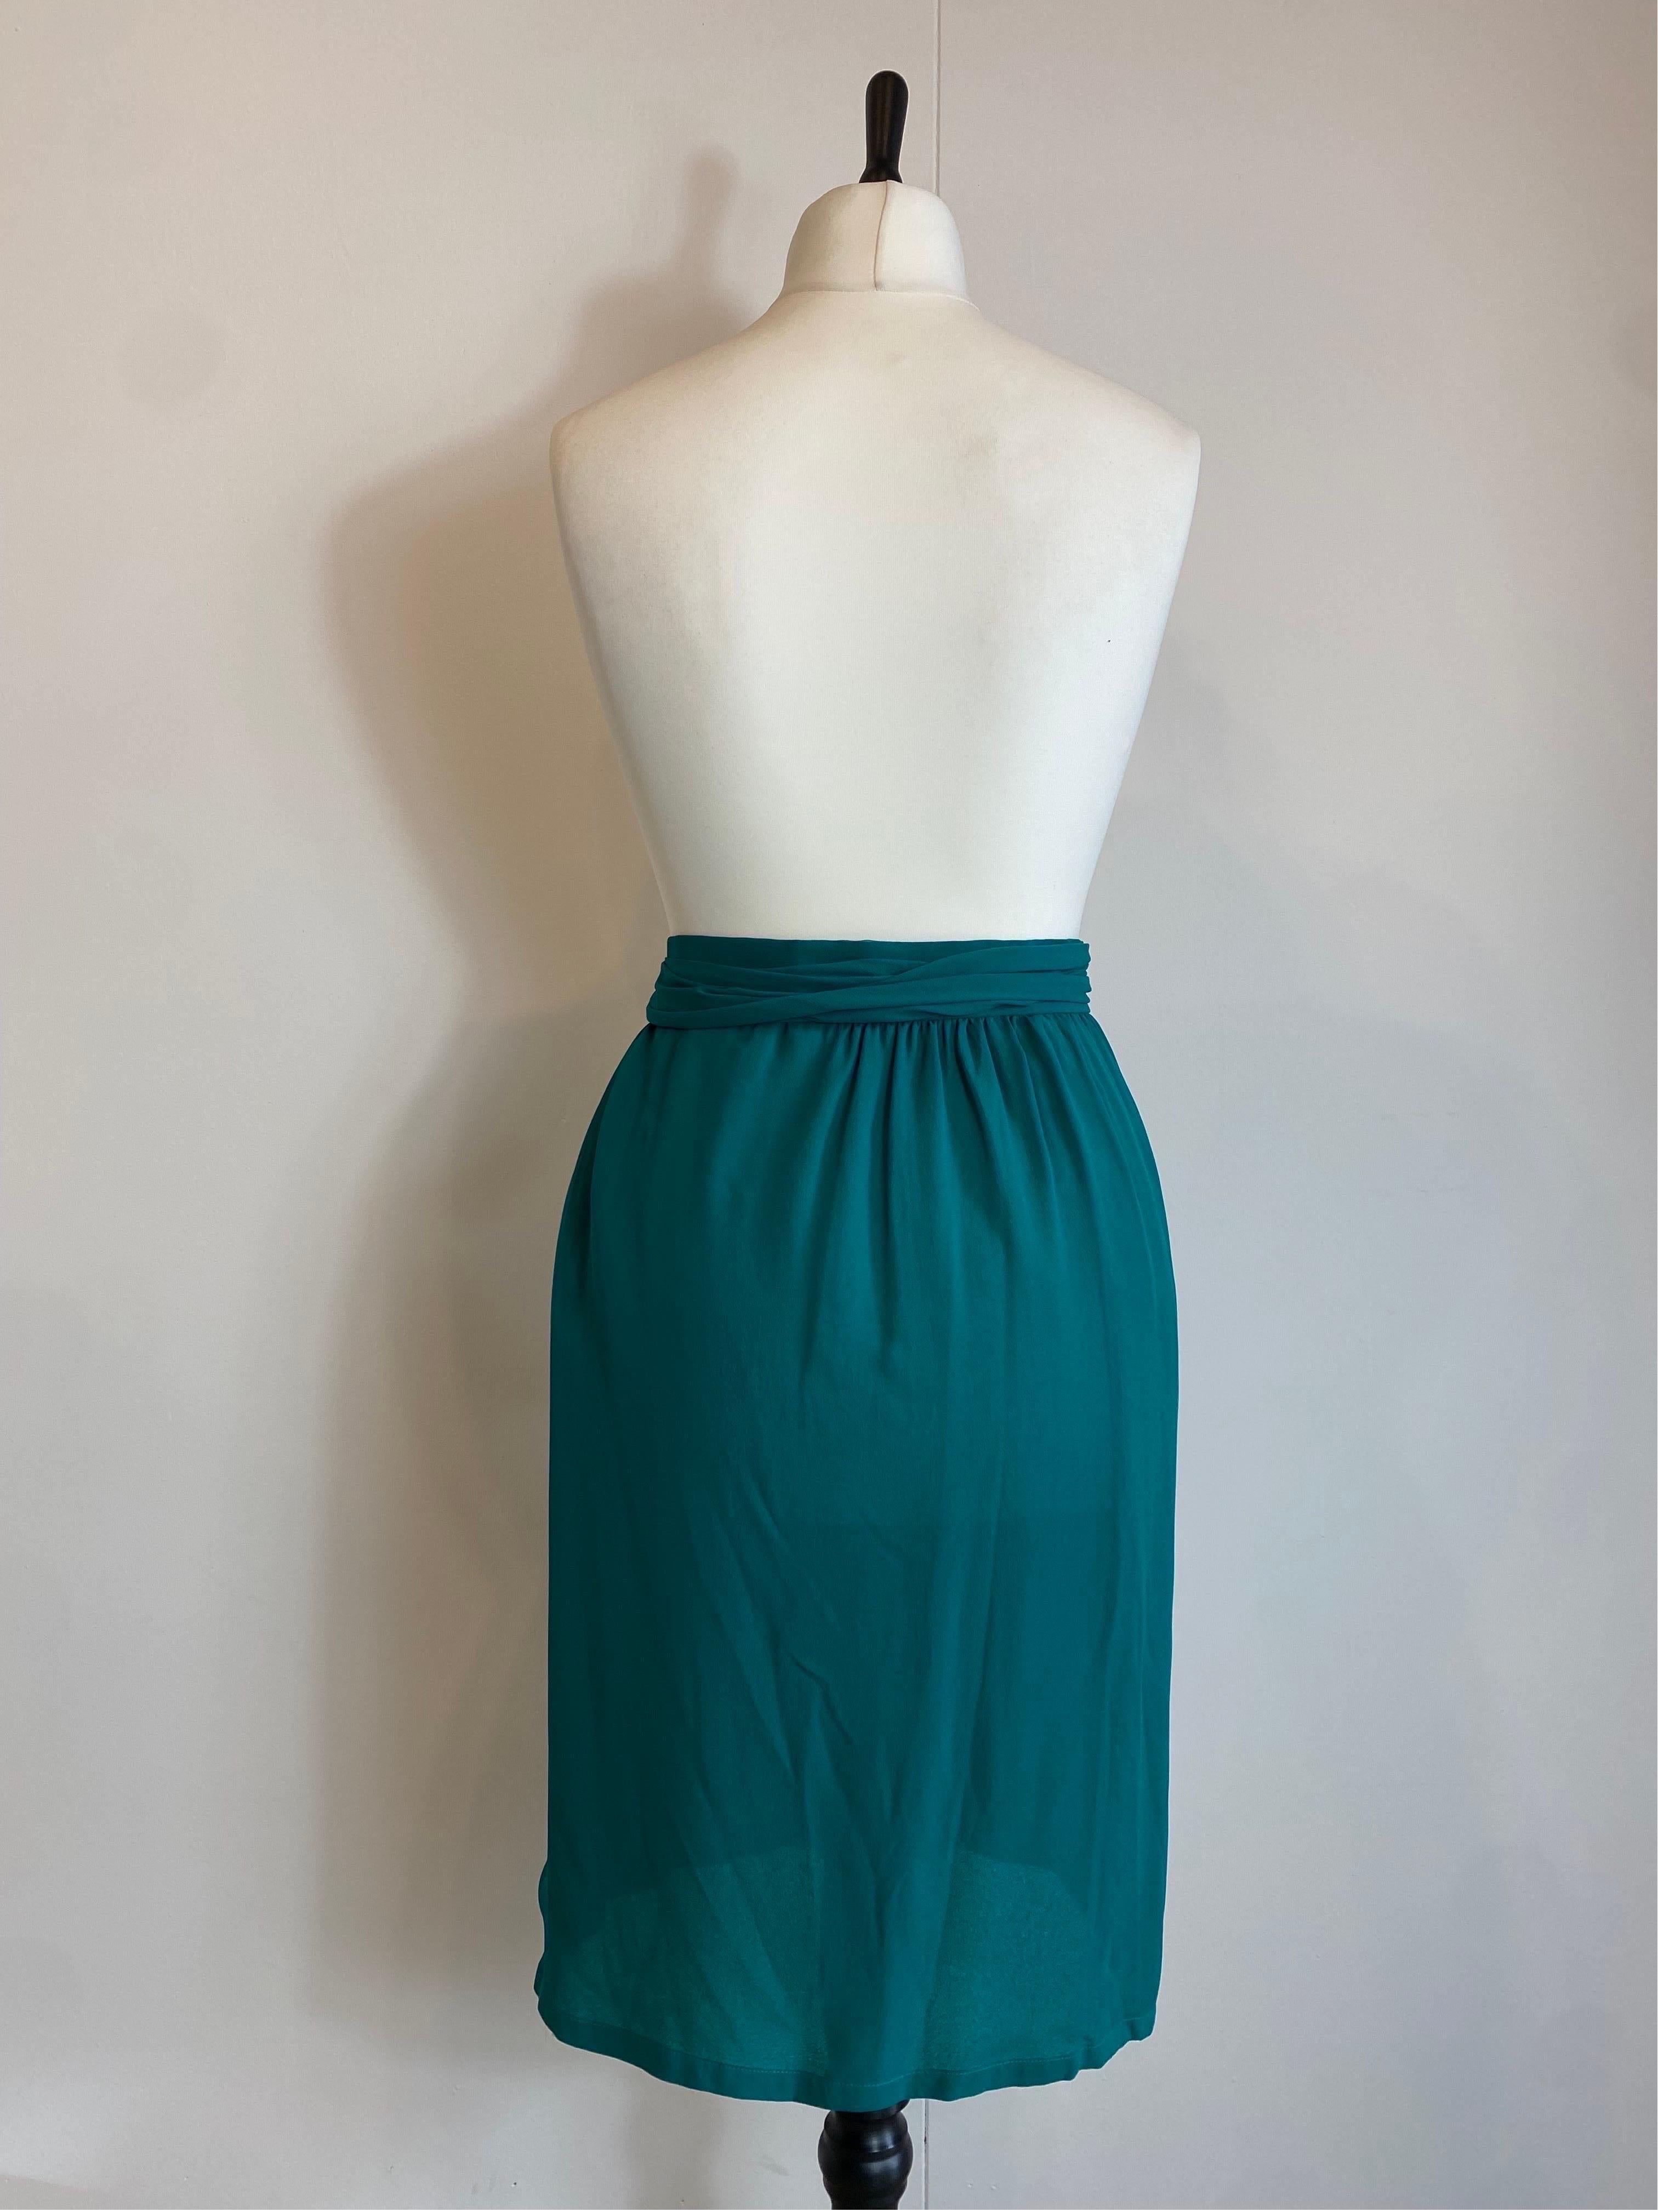 Yves Saint Laurent Vintage Emerald Green Skirt For Sale 4